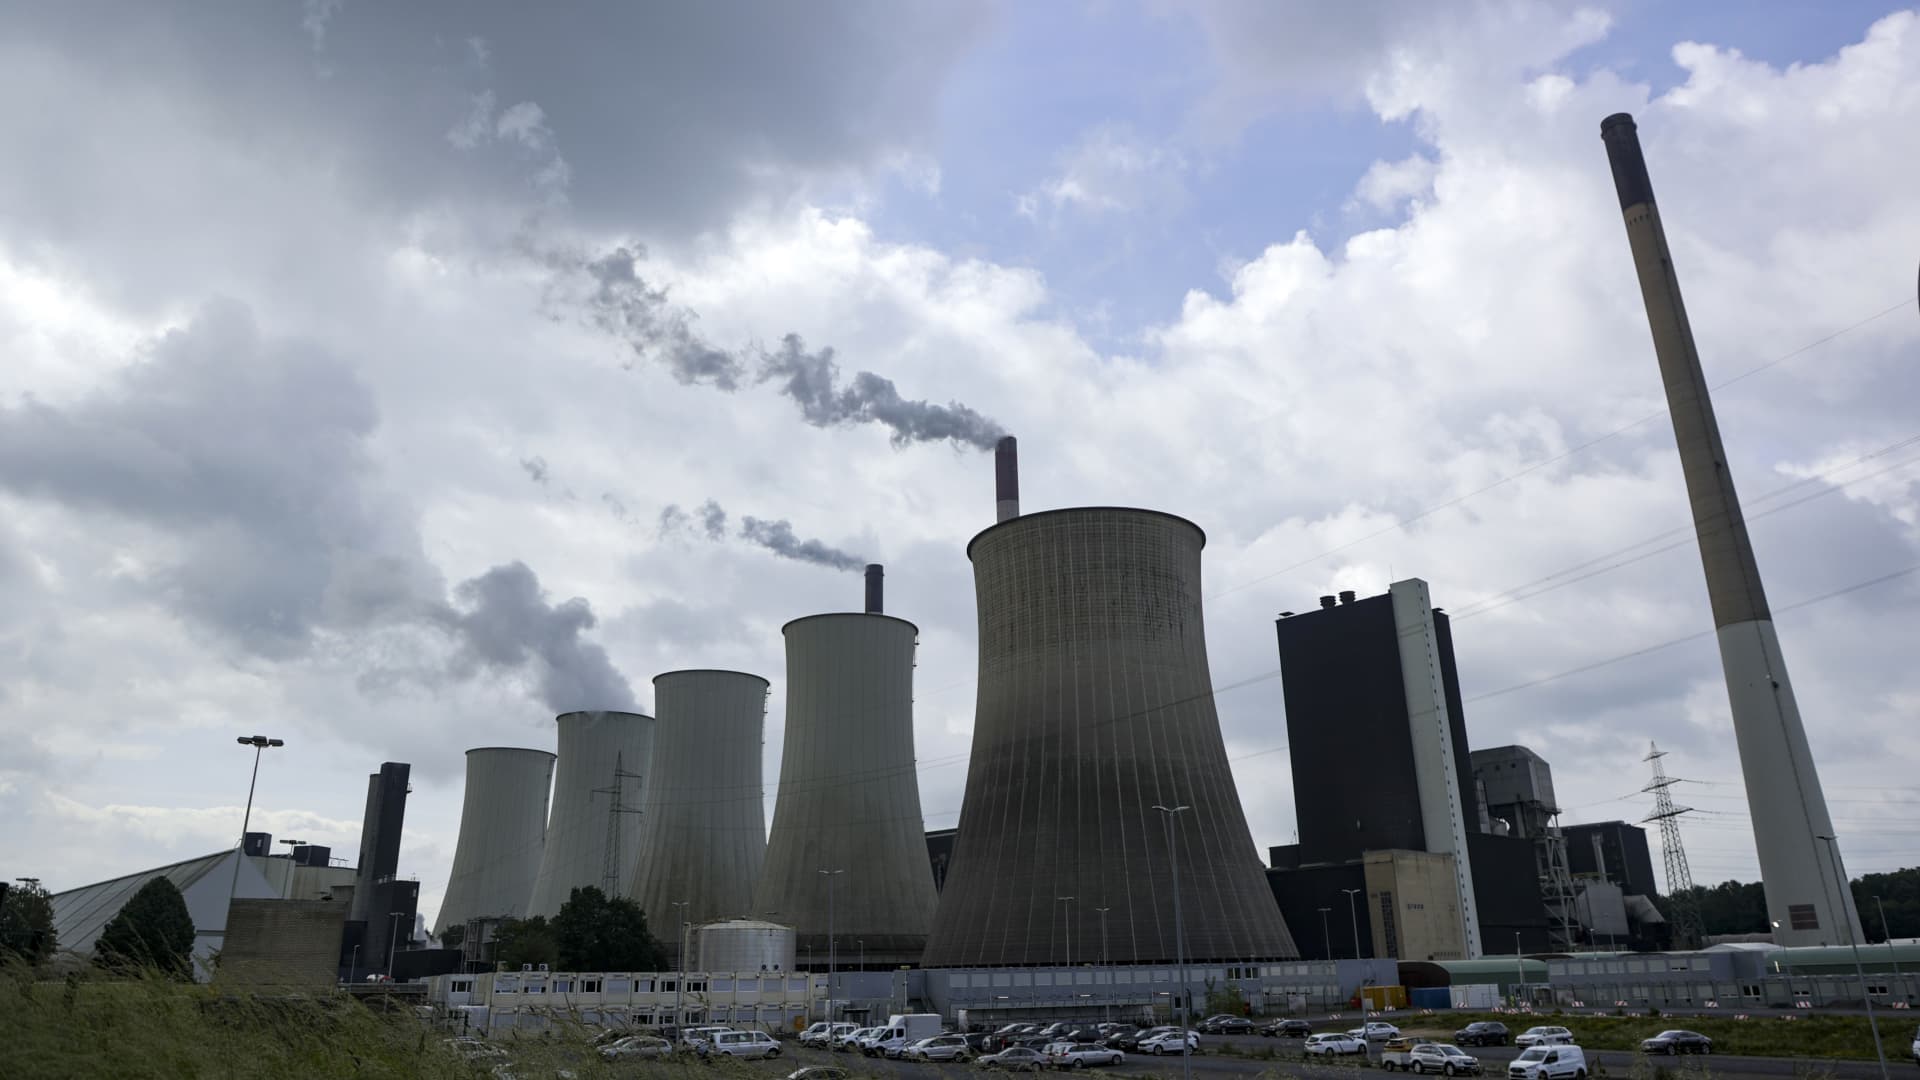 Nemecko prechádza na uhlie, keď Rusko obmedzuje dodávky plynu